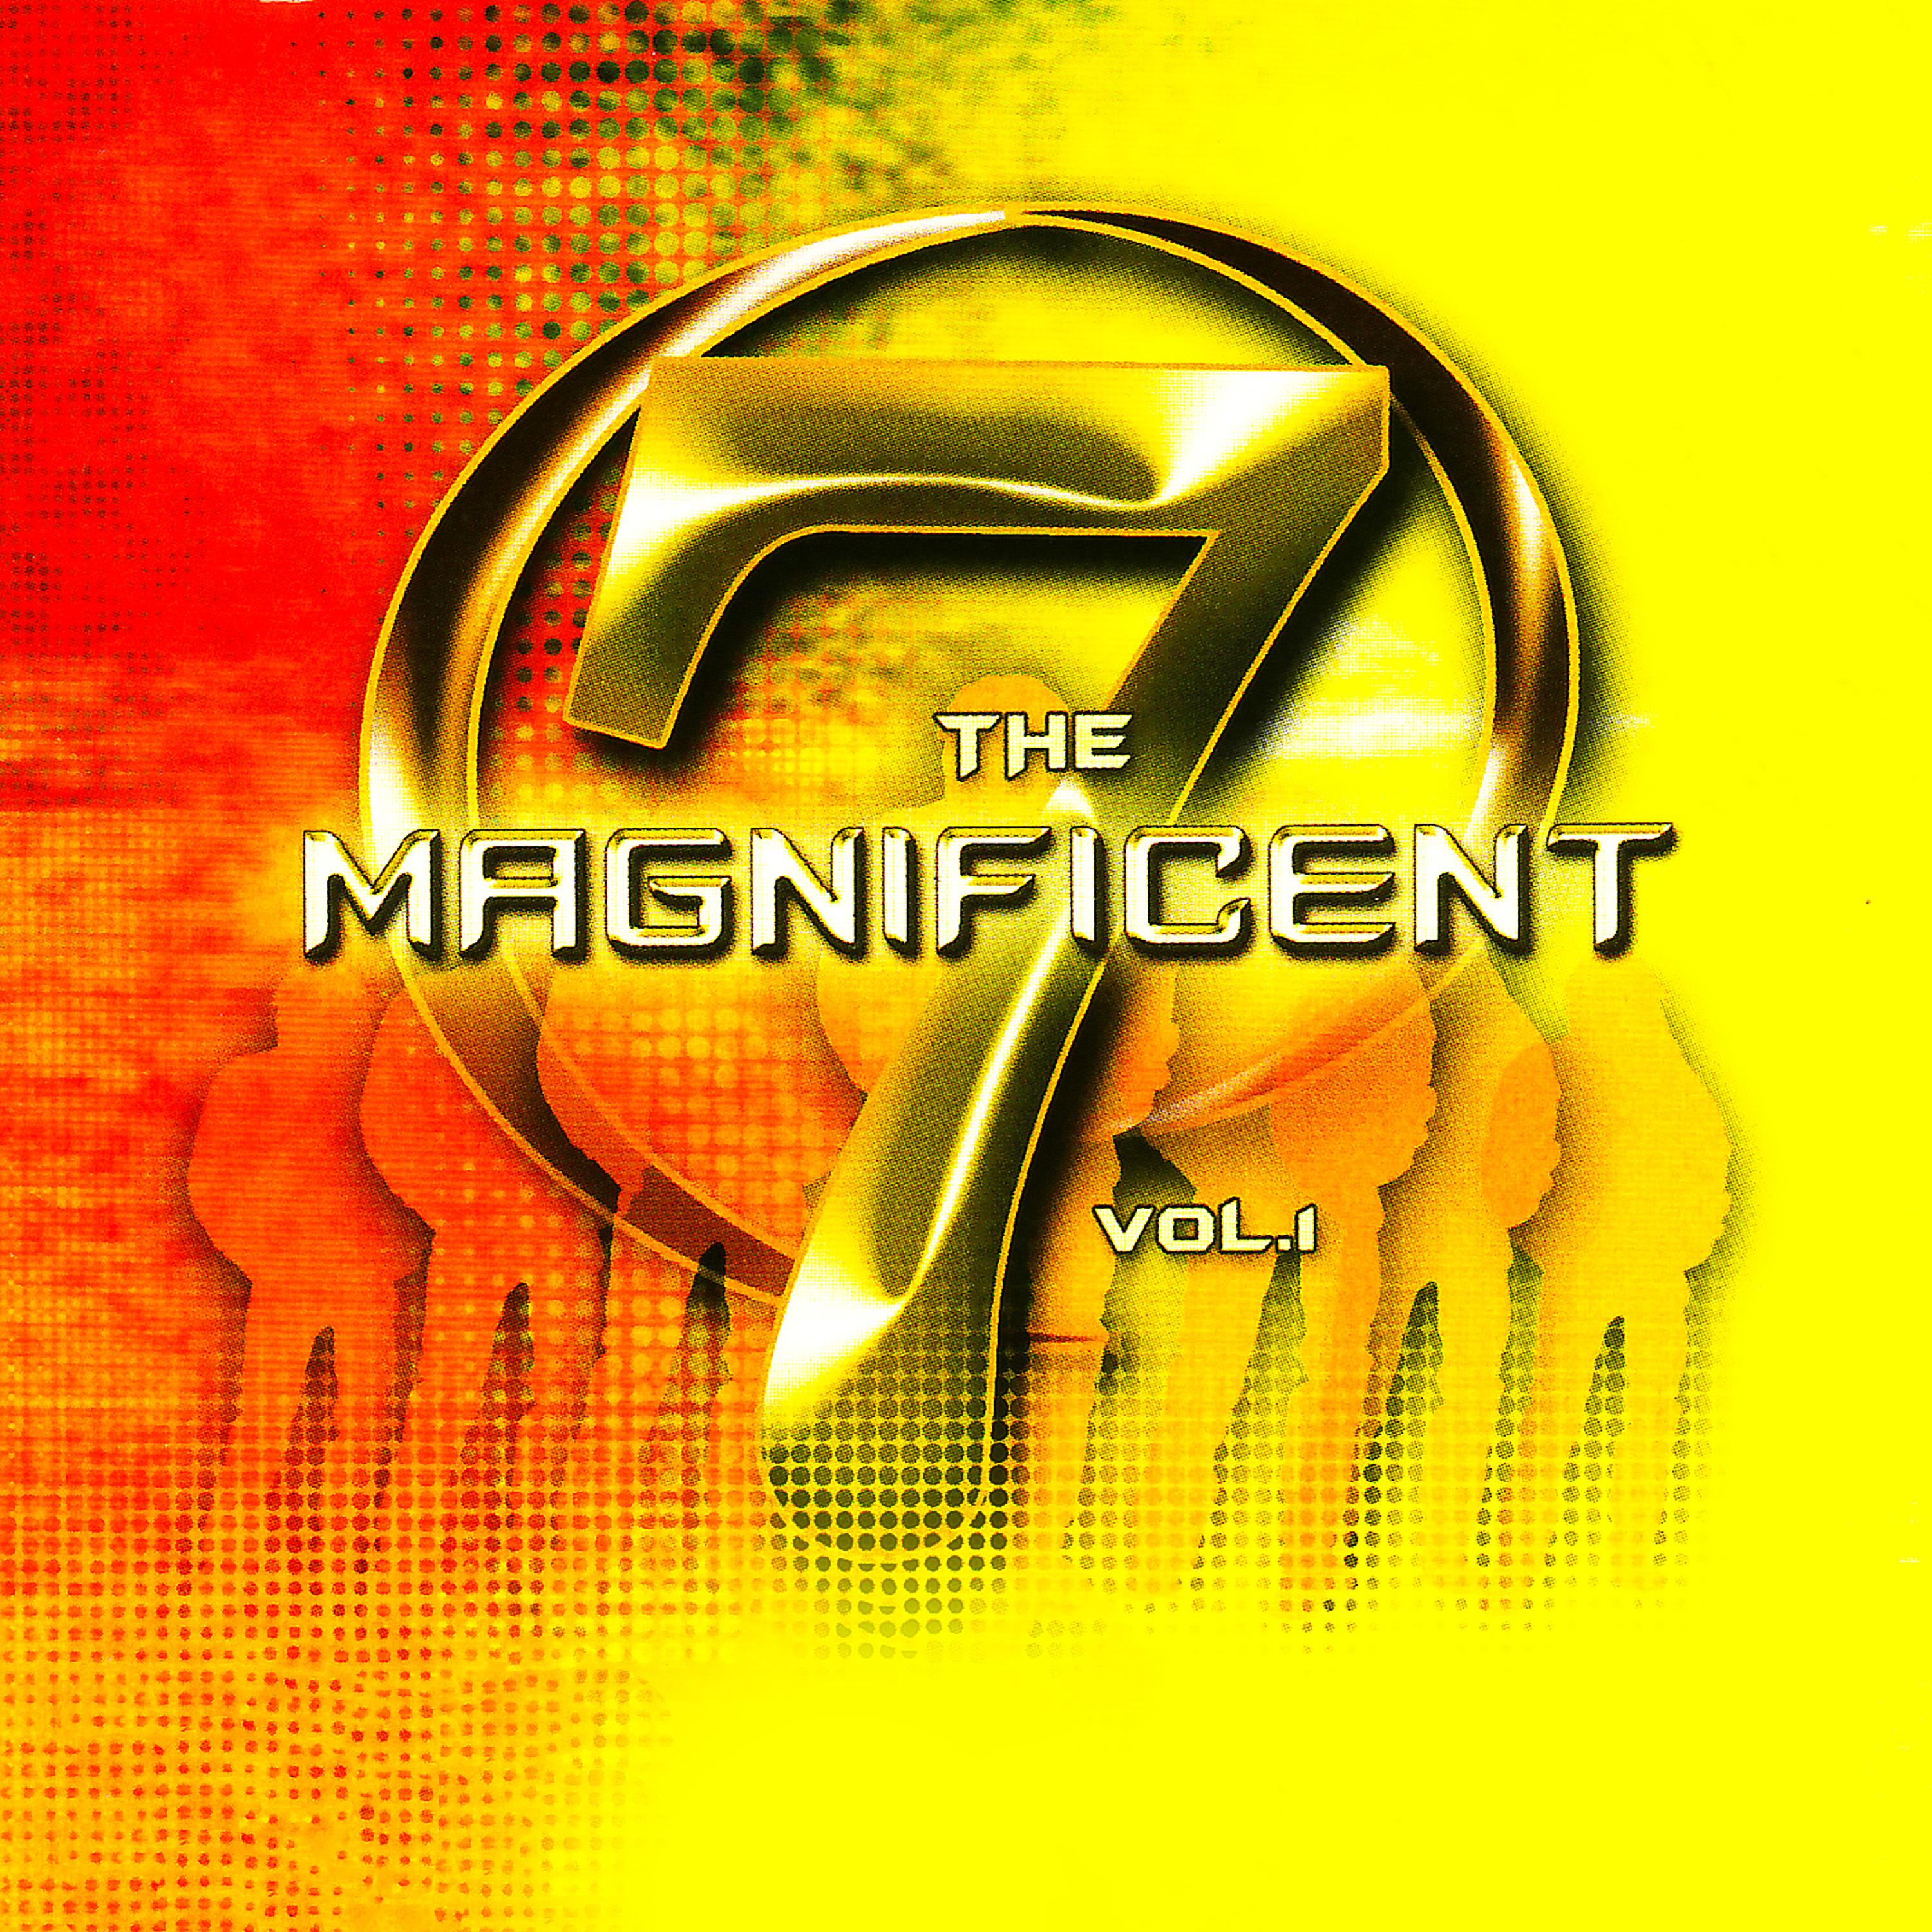 The Magnificent 7, Vol. 1